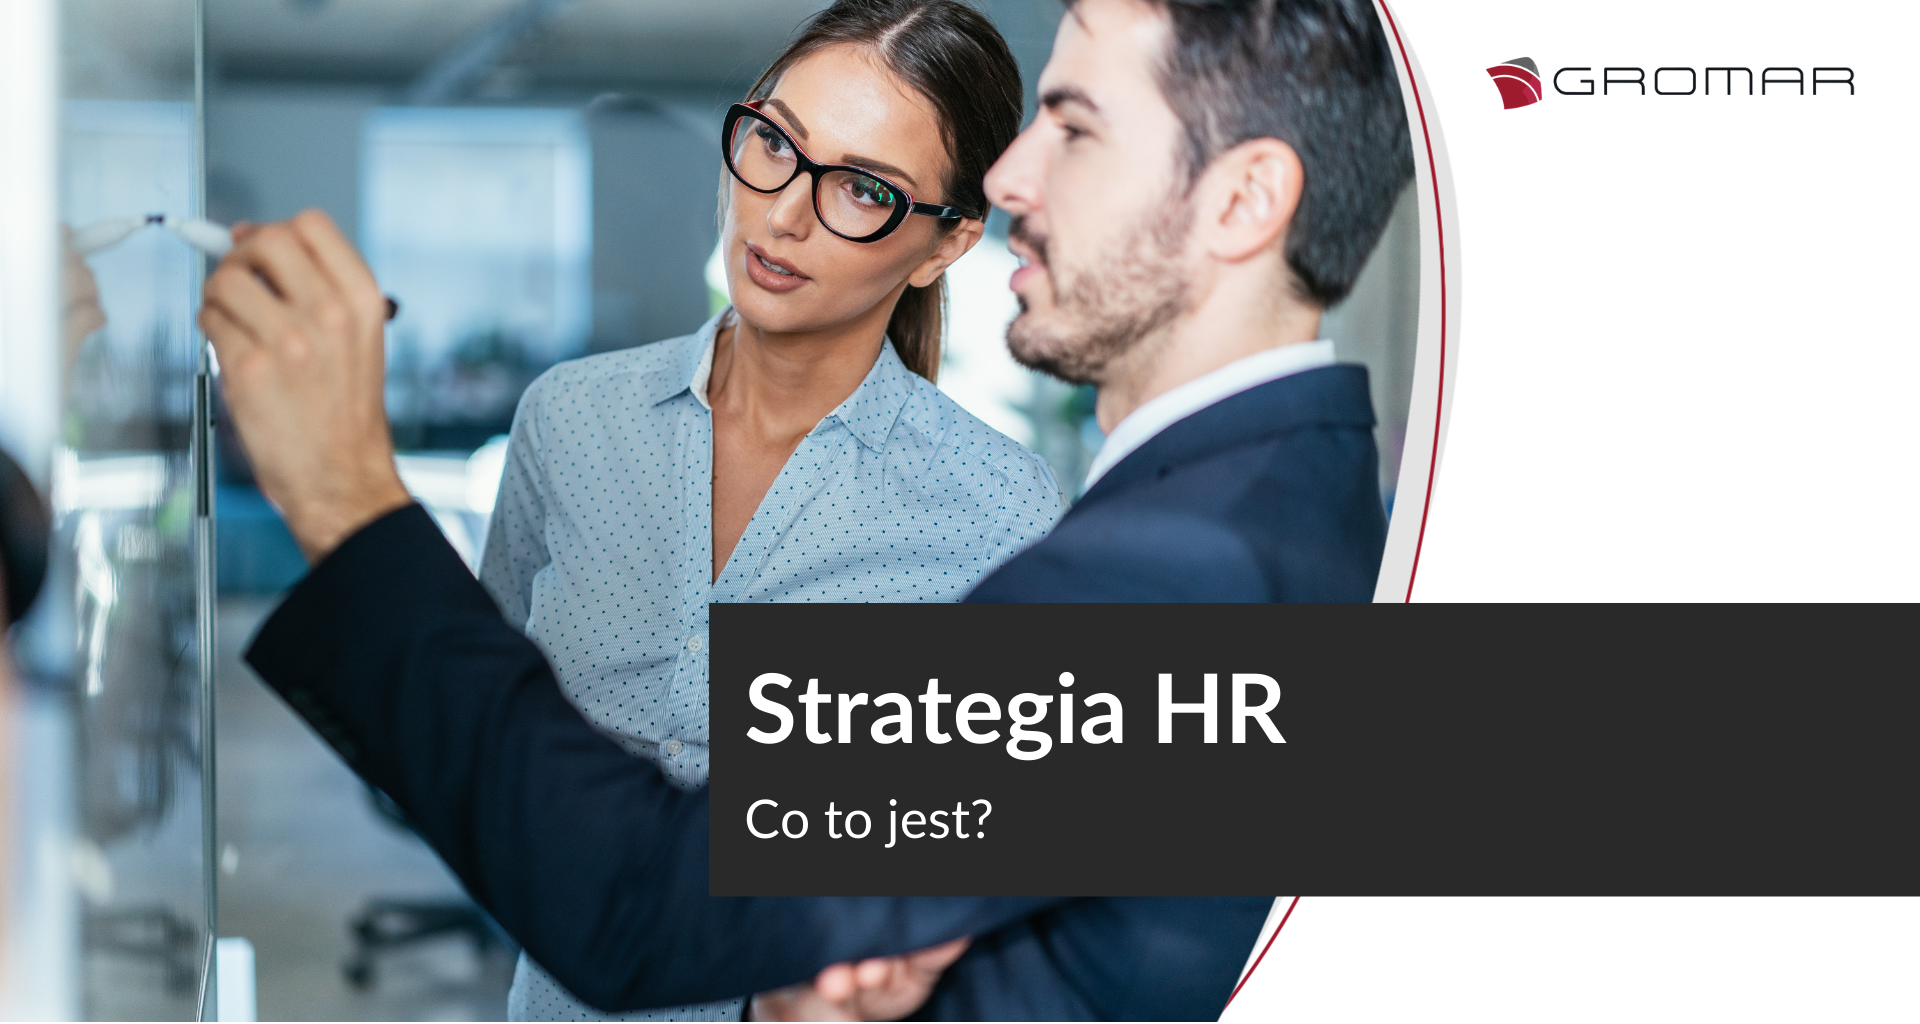 Co to jest strategia HR?